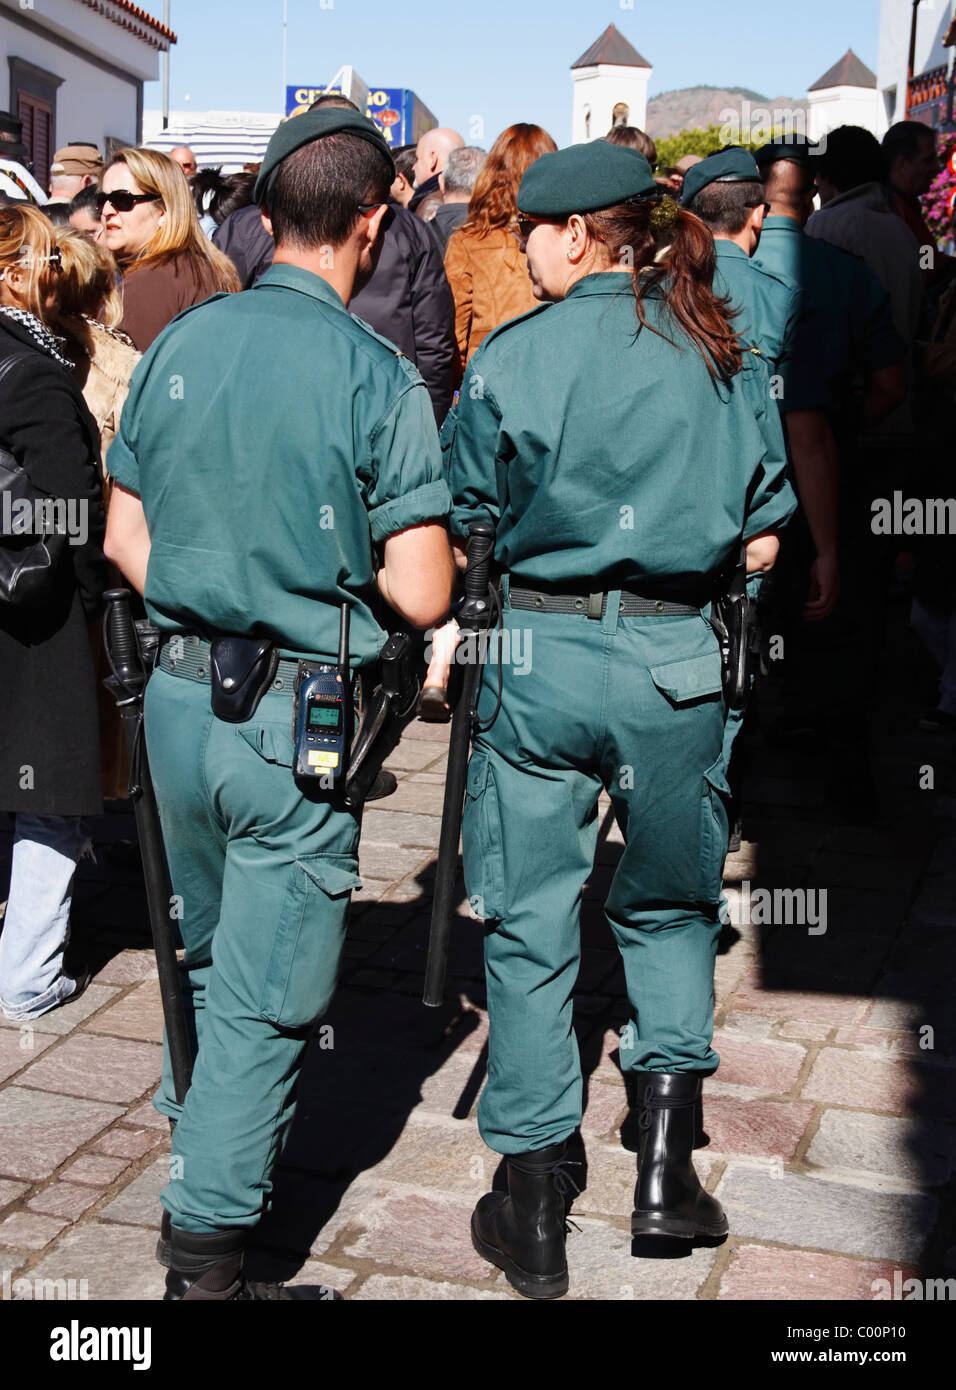 Guardia Civil at fiesta in Spain Stock Photo